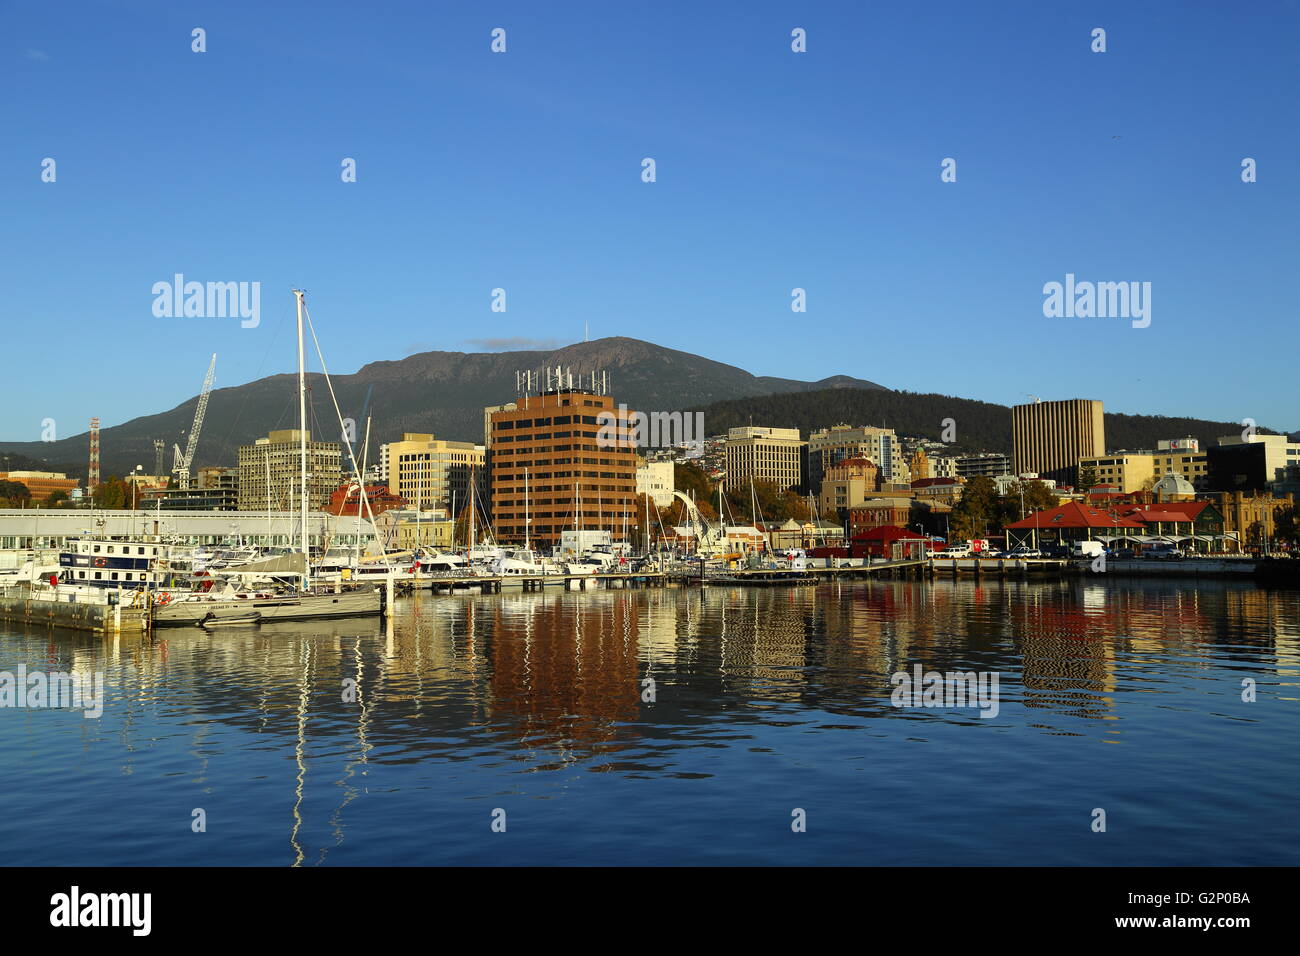 Barche da pesca in riposo a Constitution Dock, con il Monte Wellington in background - Hobart, Tasmania, Australia. Foto Stock